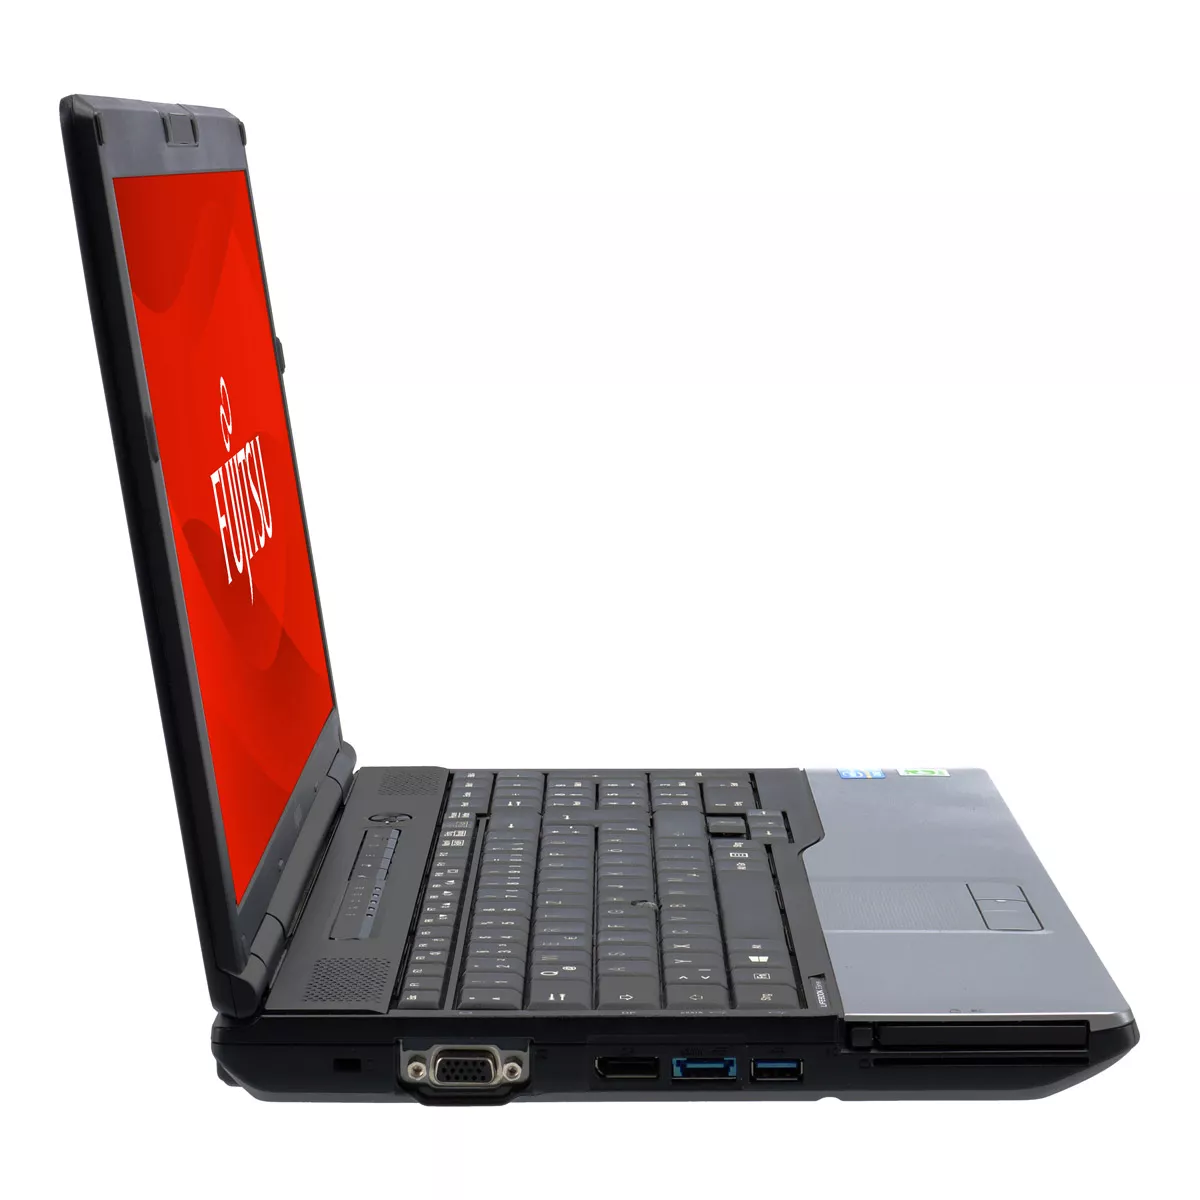 Fujitsu Lifebook E752 Core i5 3230M 2,60 GHz Webcam B